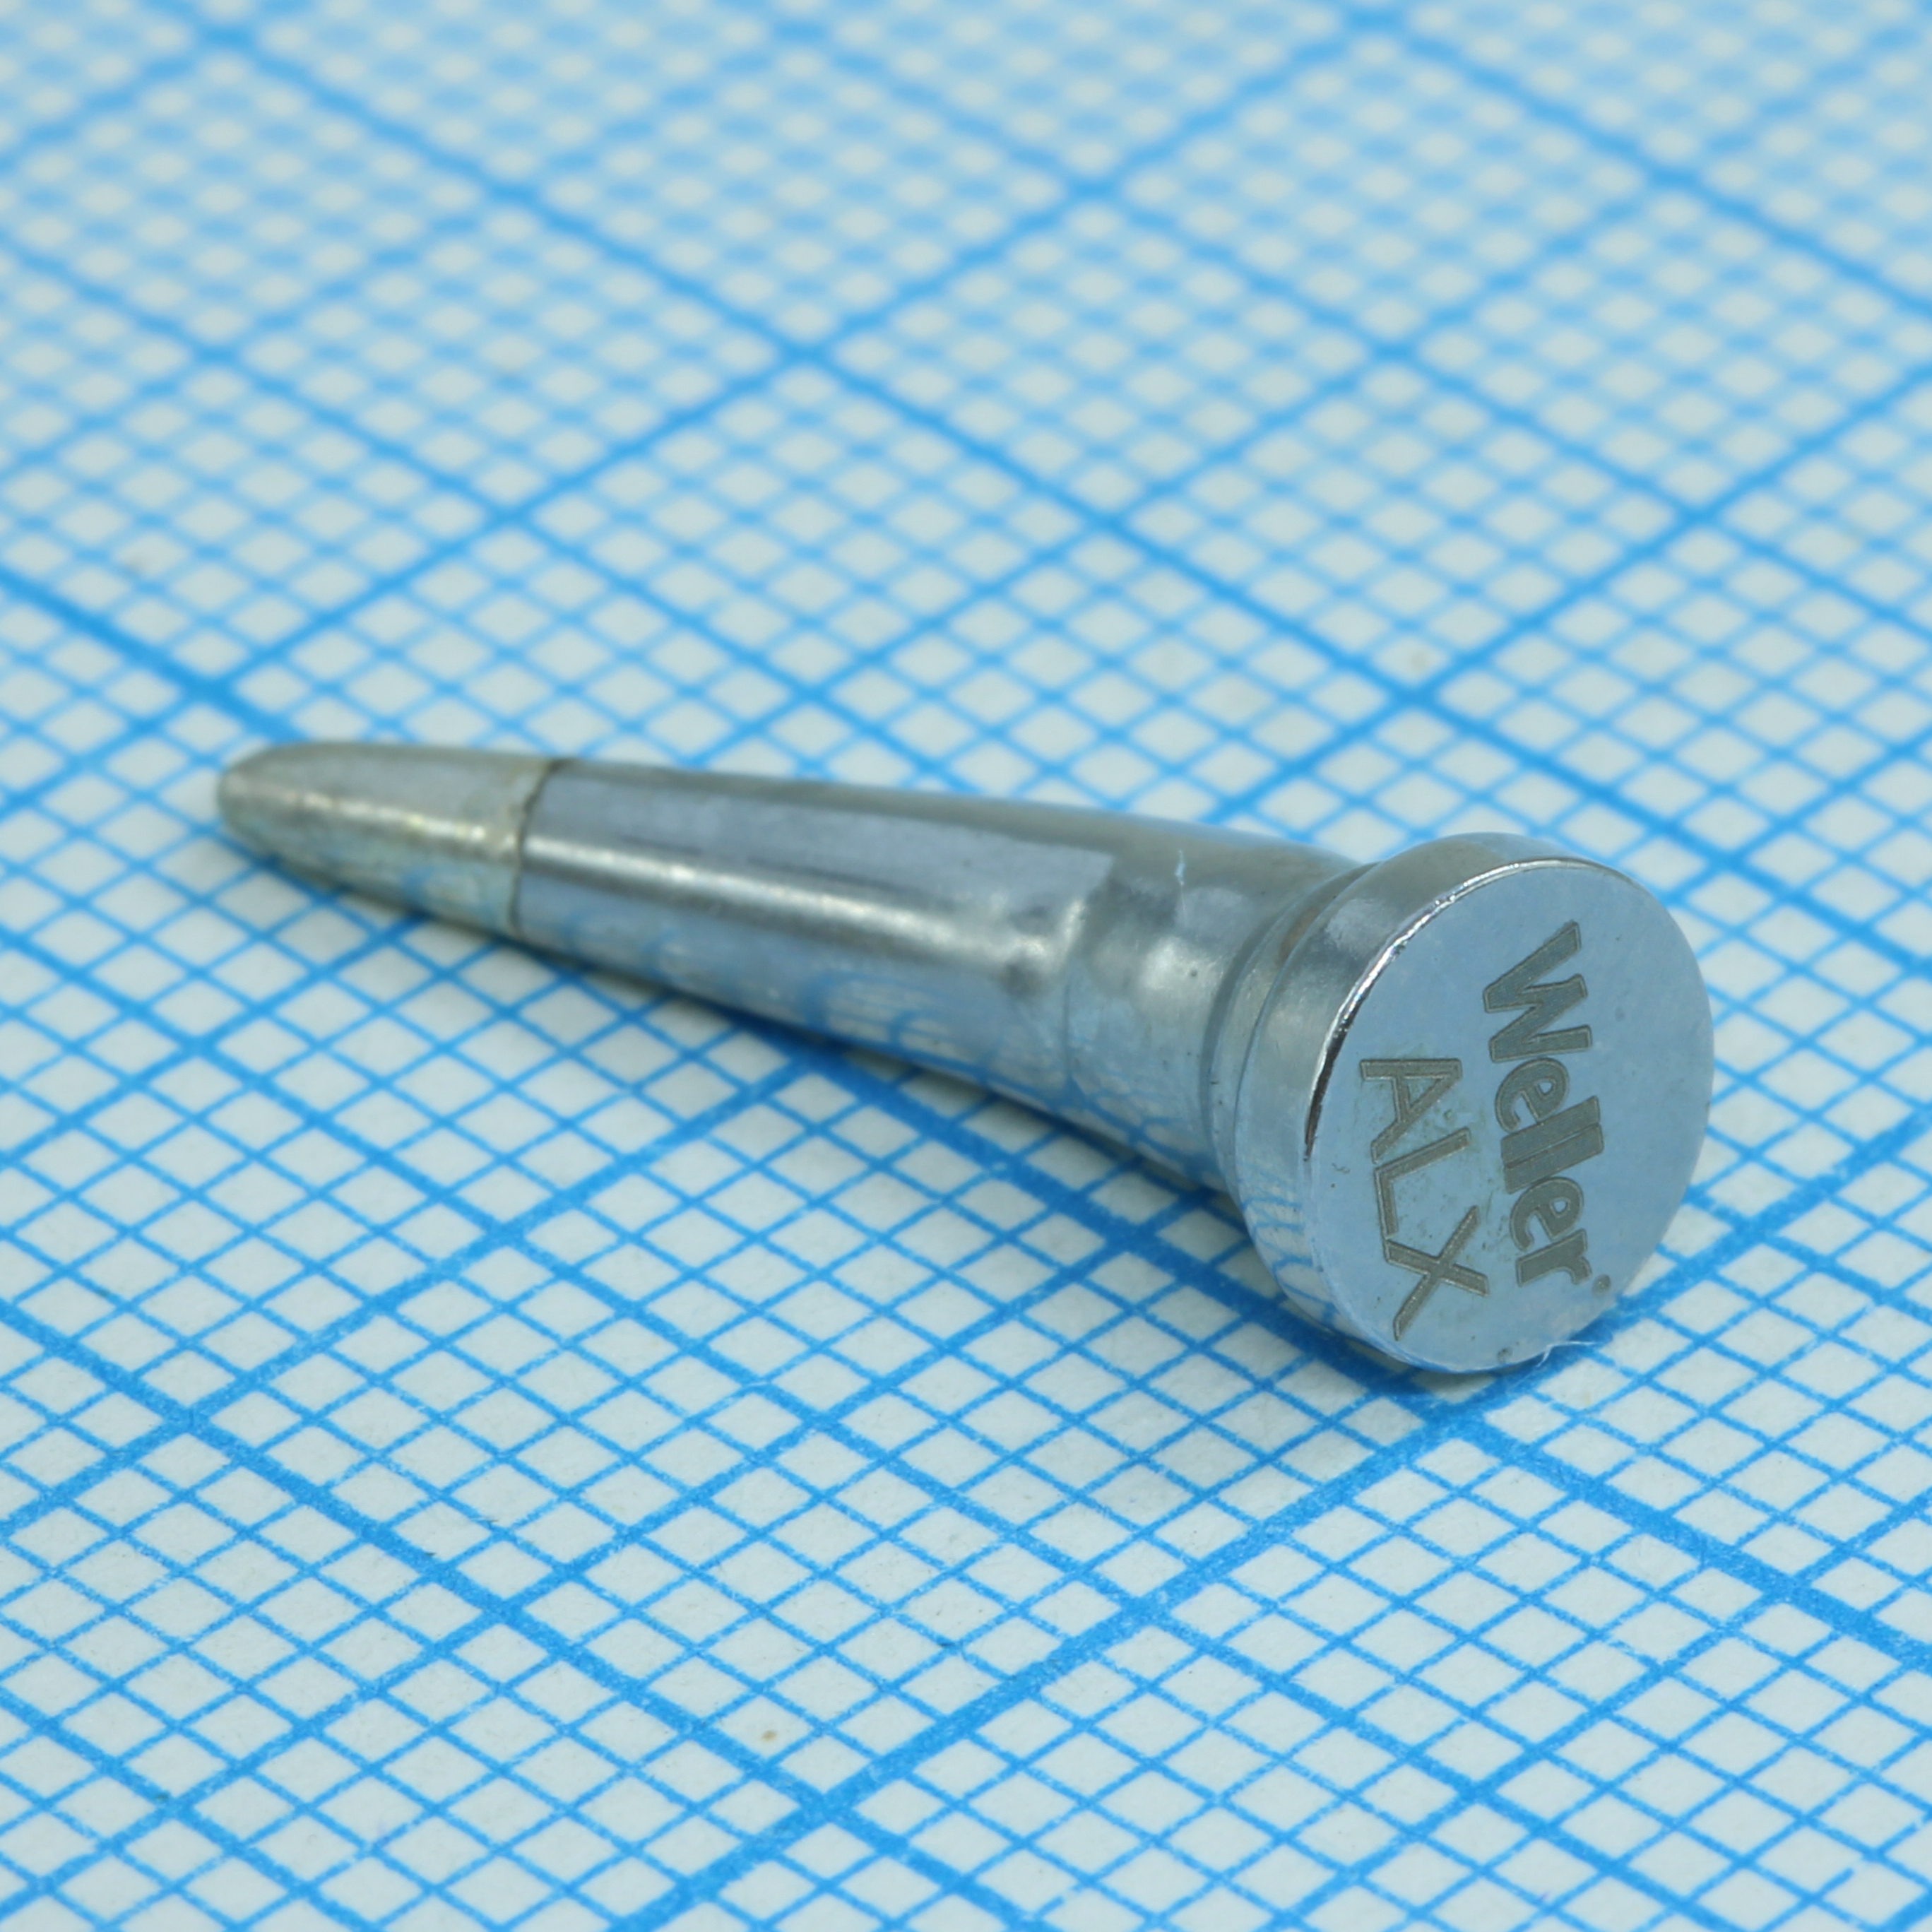 LT ALX soldering tip 1, 6mm